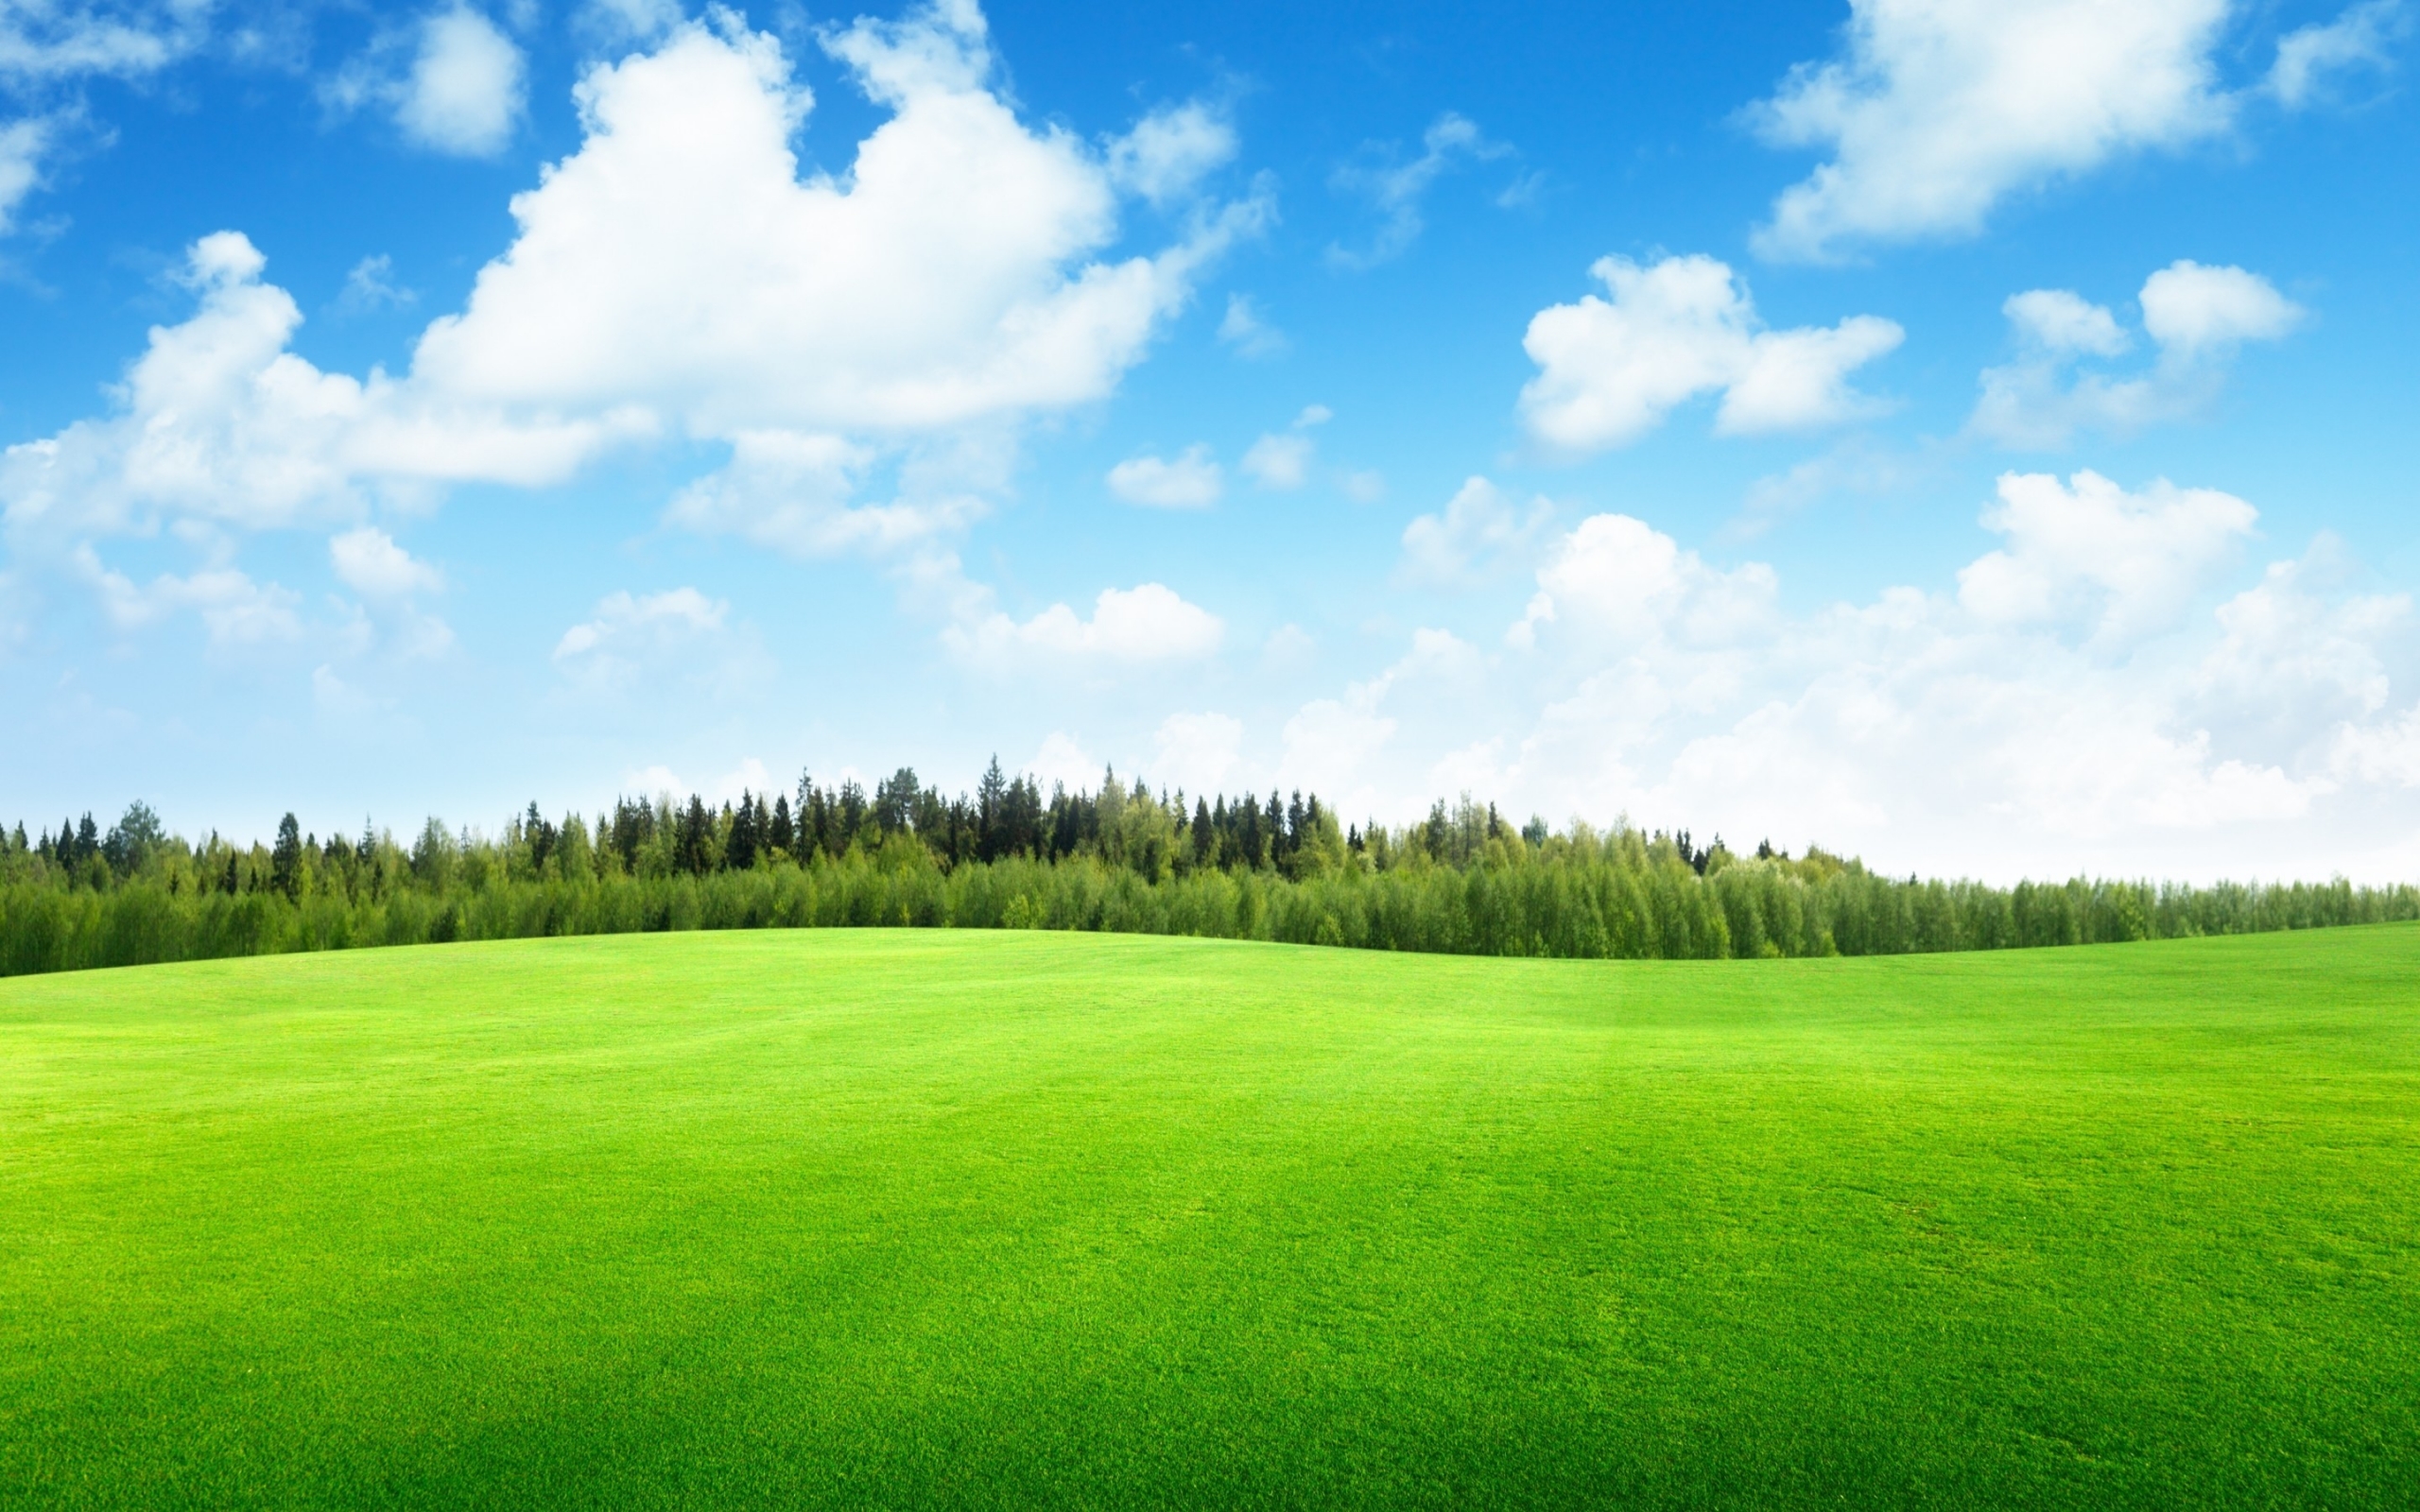 Beaufitul Green Grass Field for 2560 x 1600 widescreen resolution